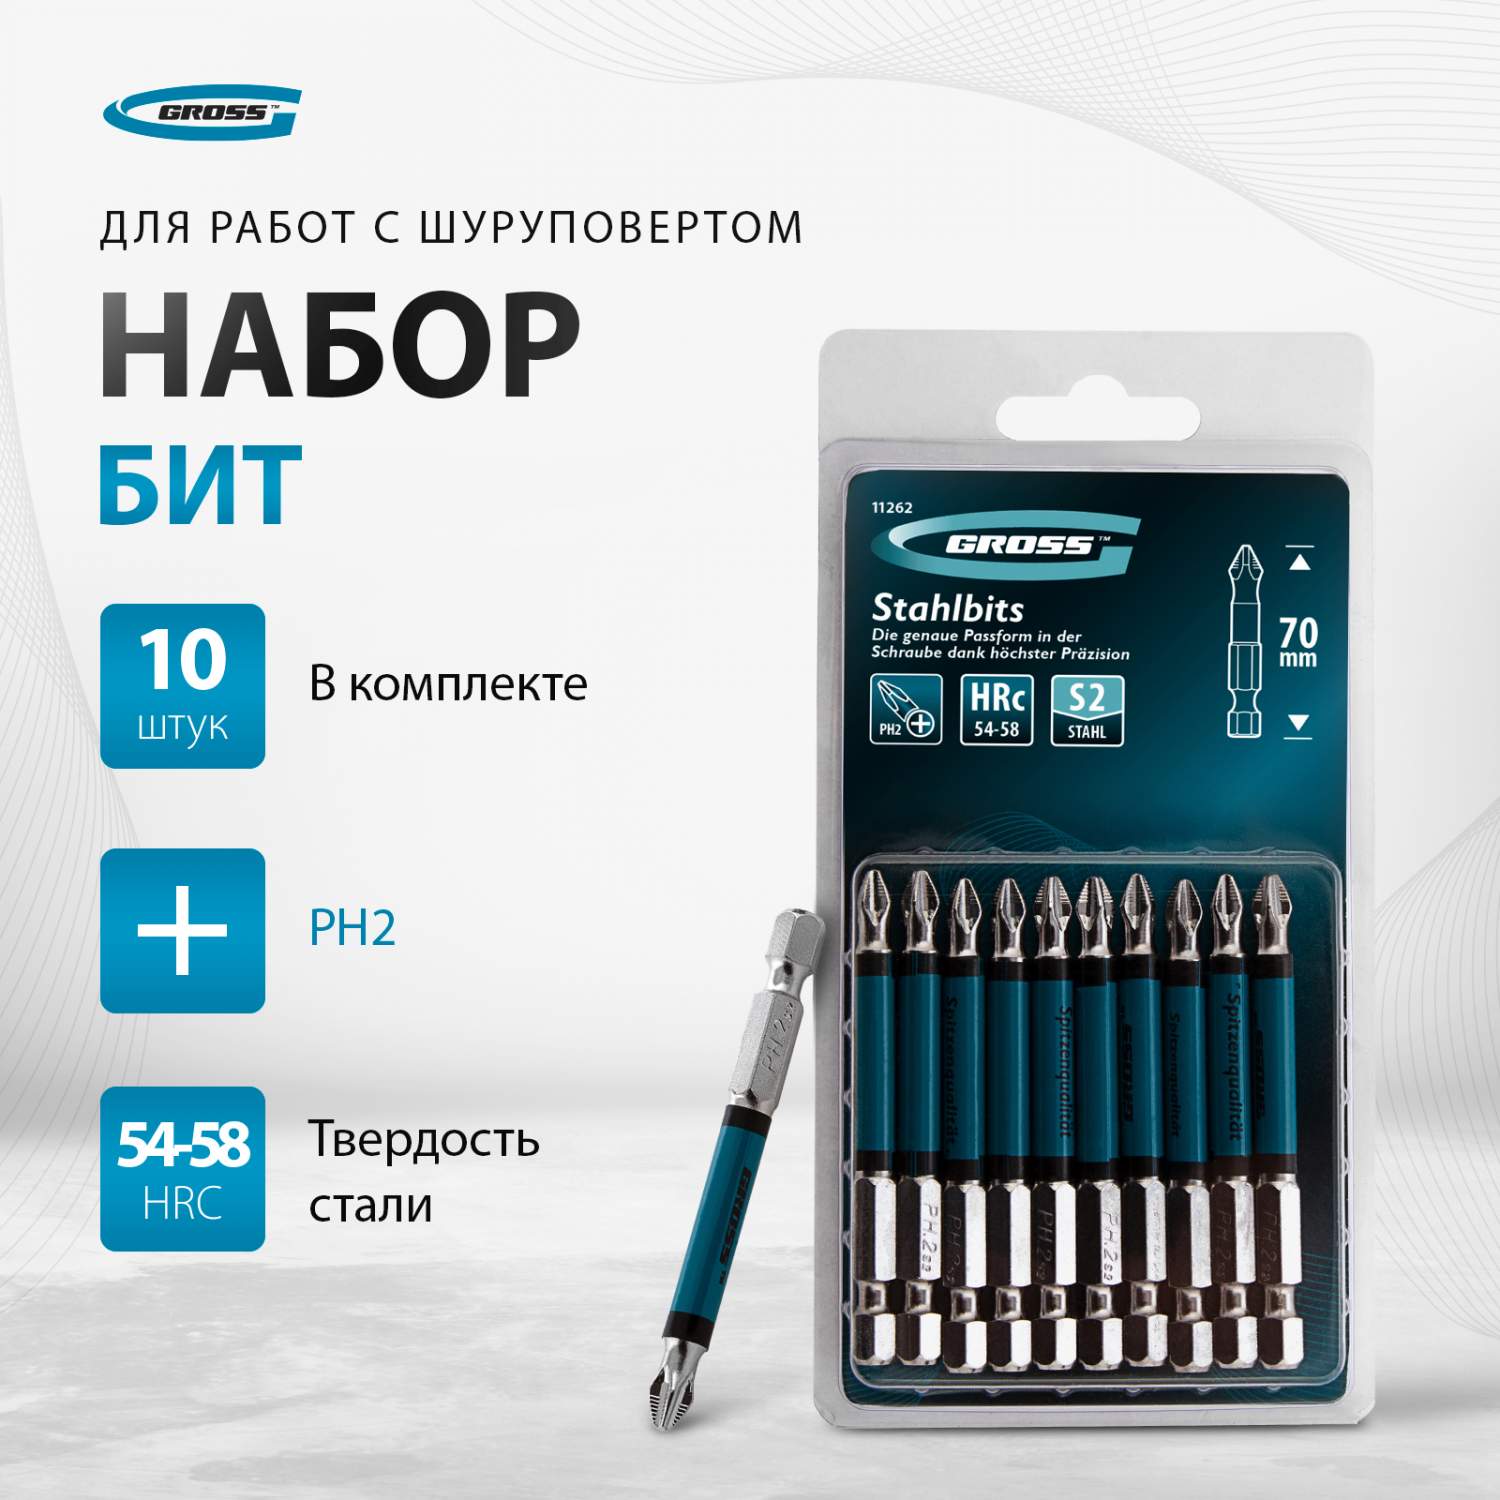 Ручки капиллярные и пигментные и купить в Минске | цены оптом в Офистон